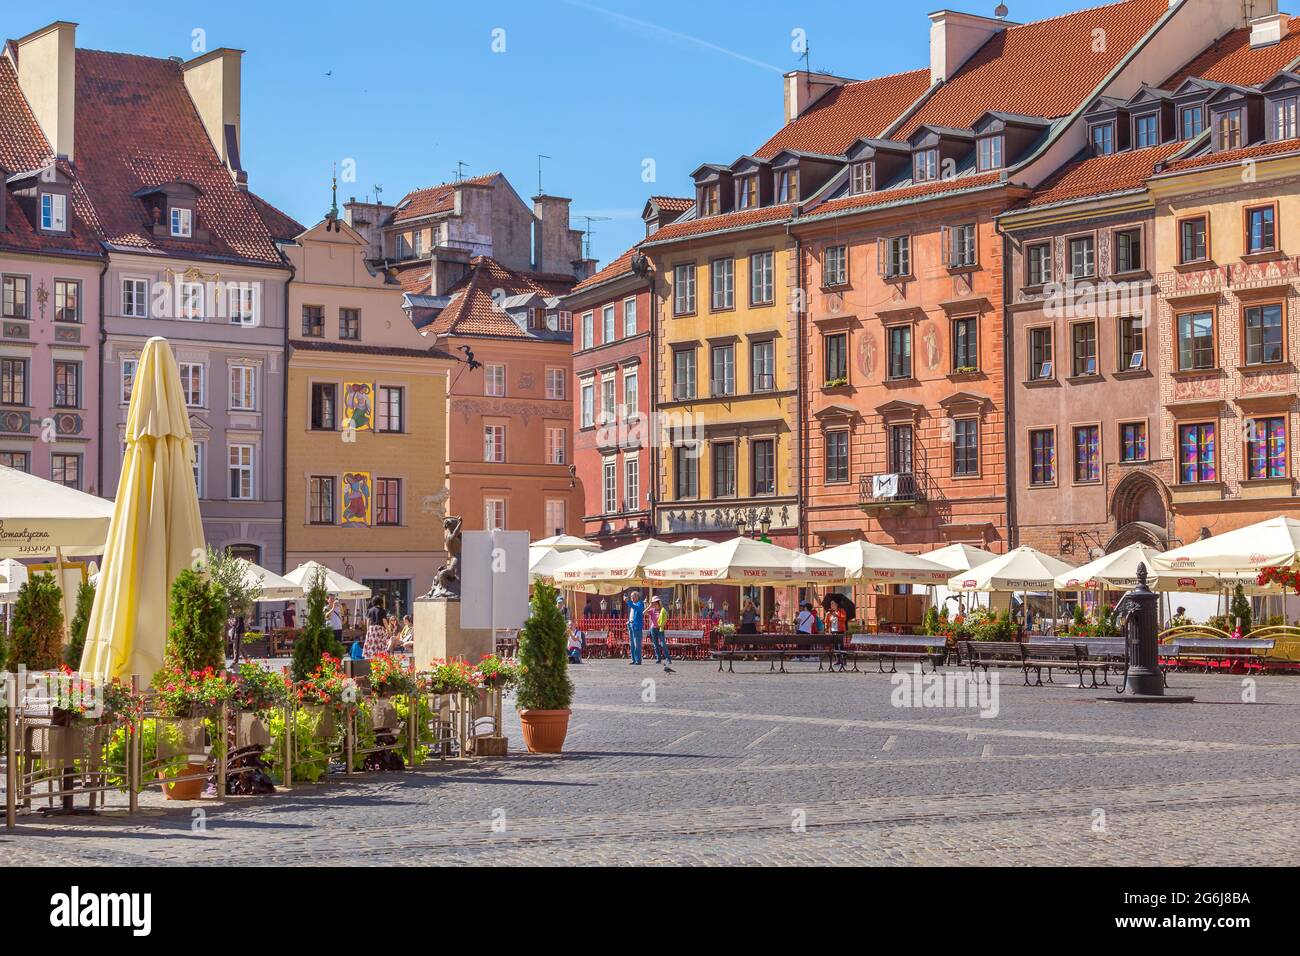 Varsovia, Polonia - Junio 24, 2019: Cafe con flores y coloridas casas en la plaza del mercado en el casco antiguo de la capital polaca Foto de stock